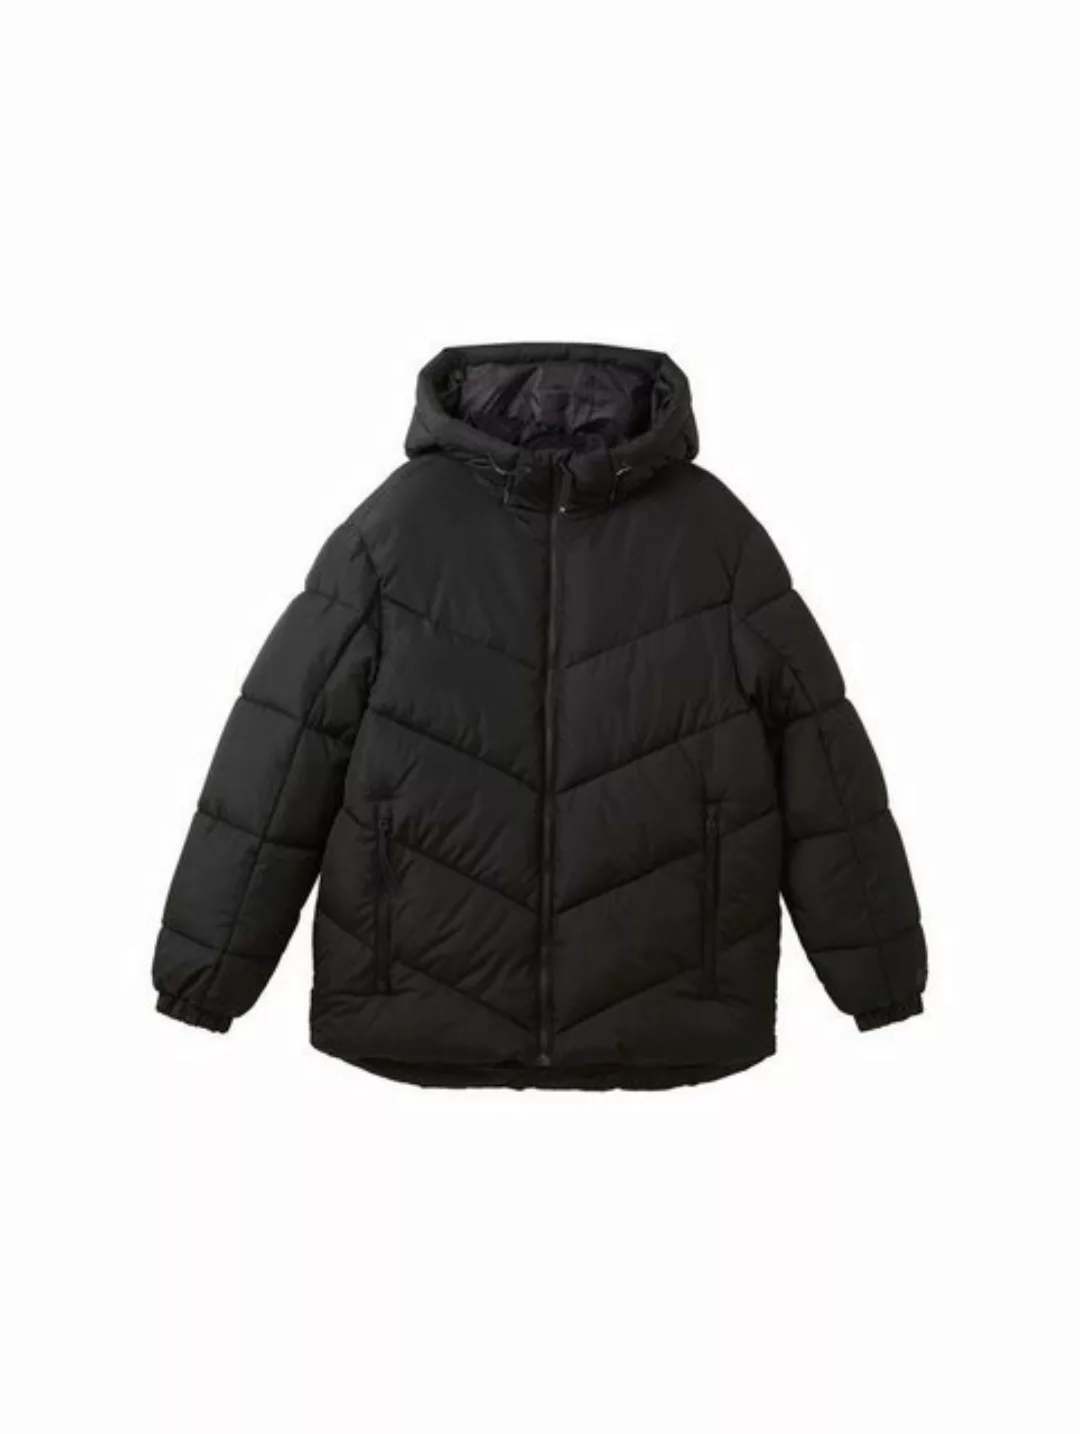 TOM TAILOR Denim Outdoorjacke hooded puffer jacket günstig online kaufen